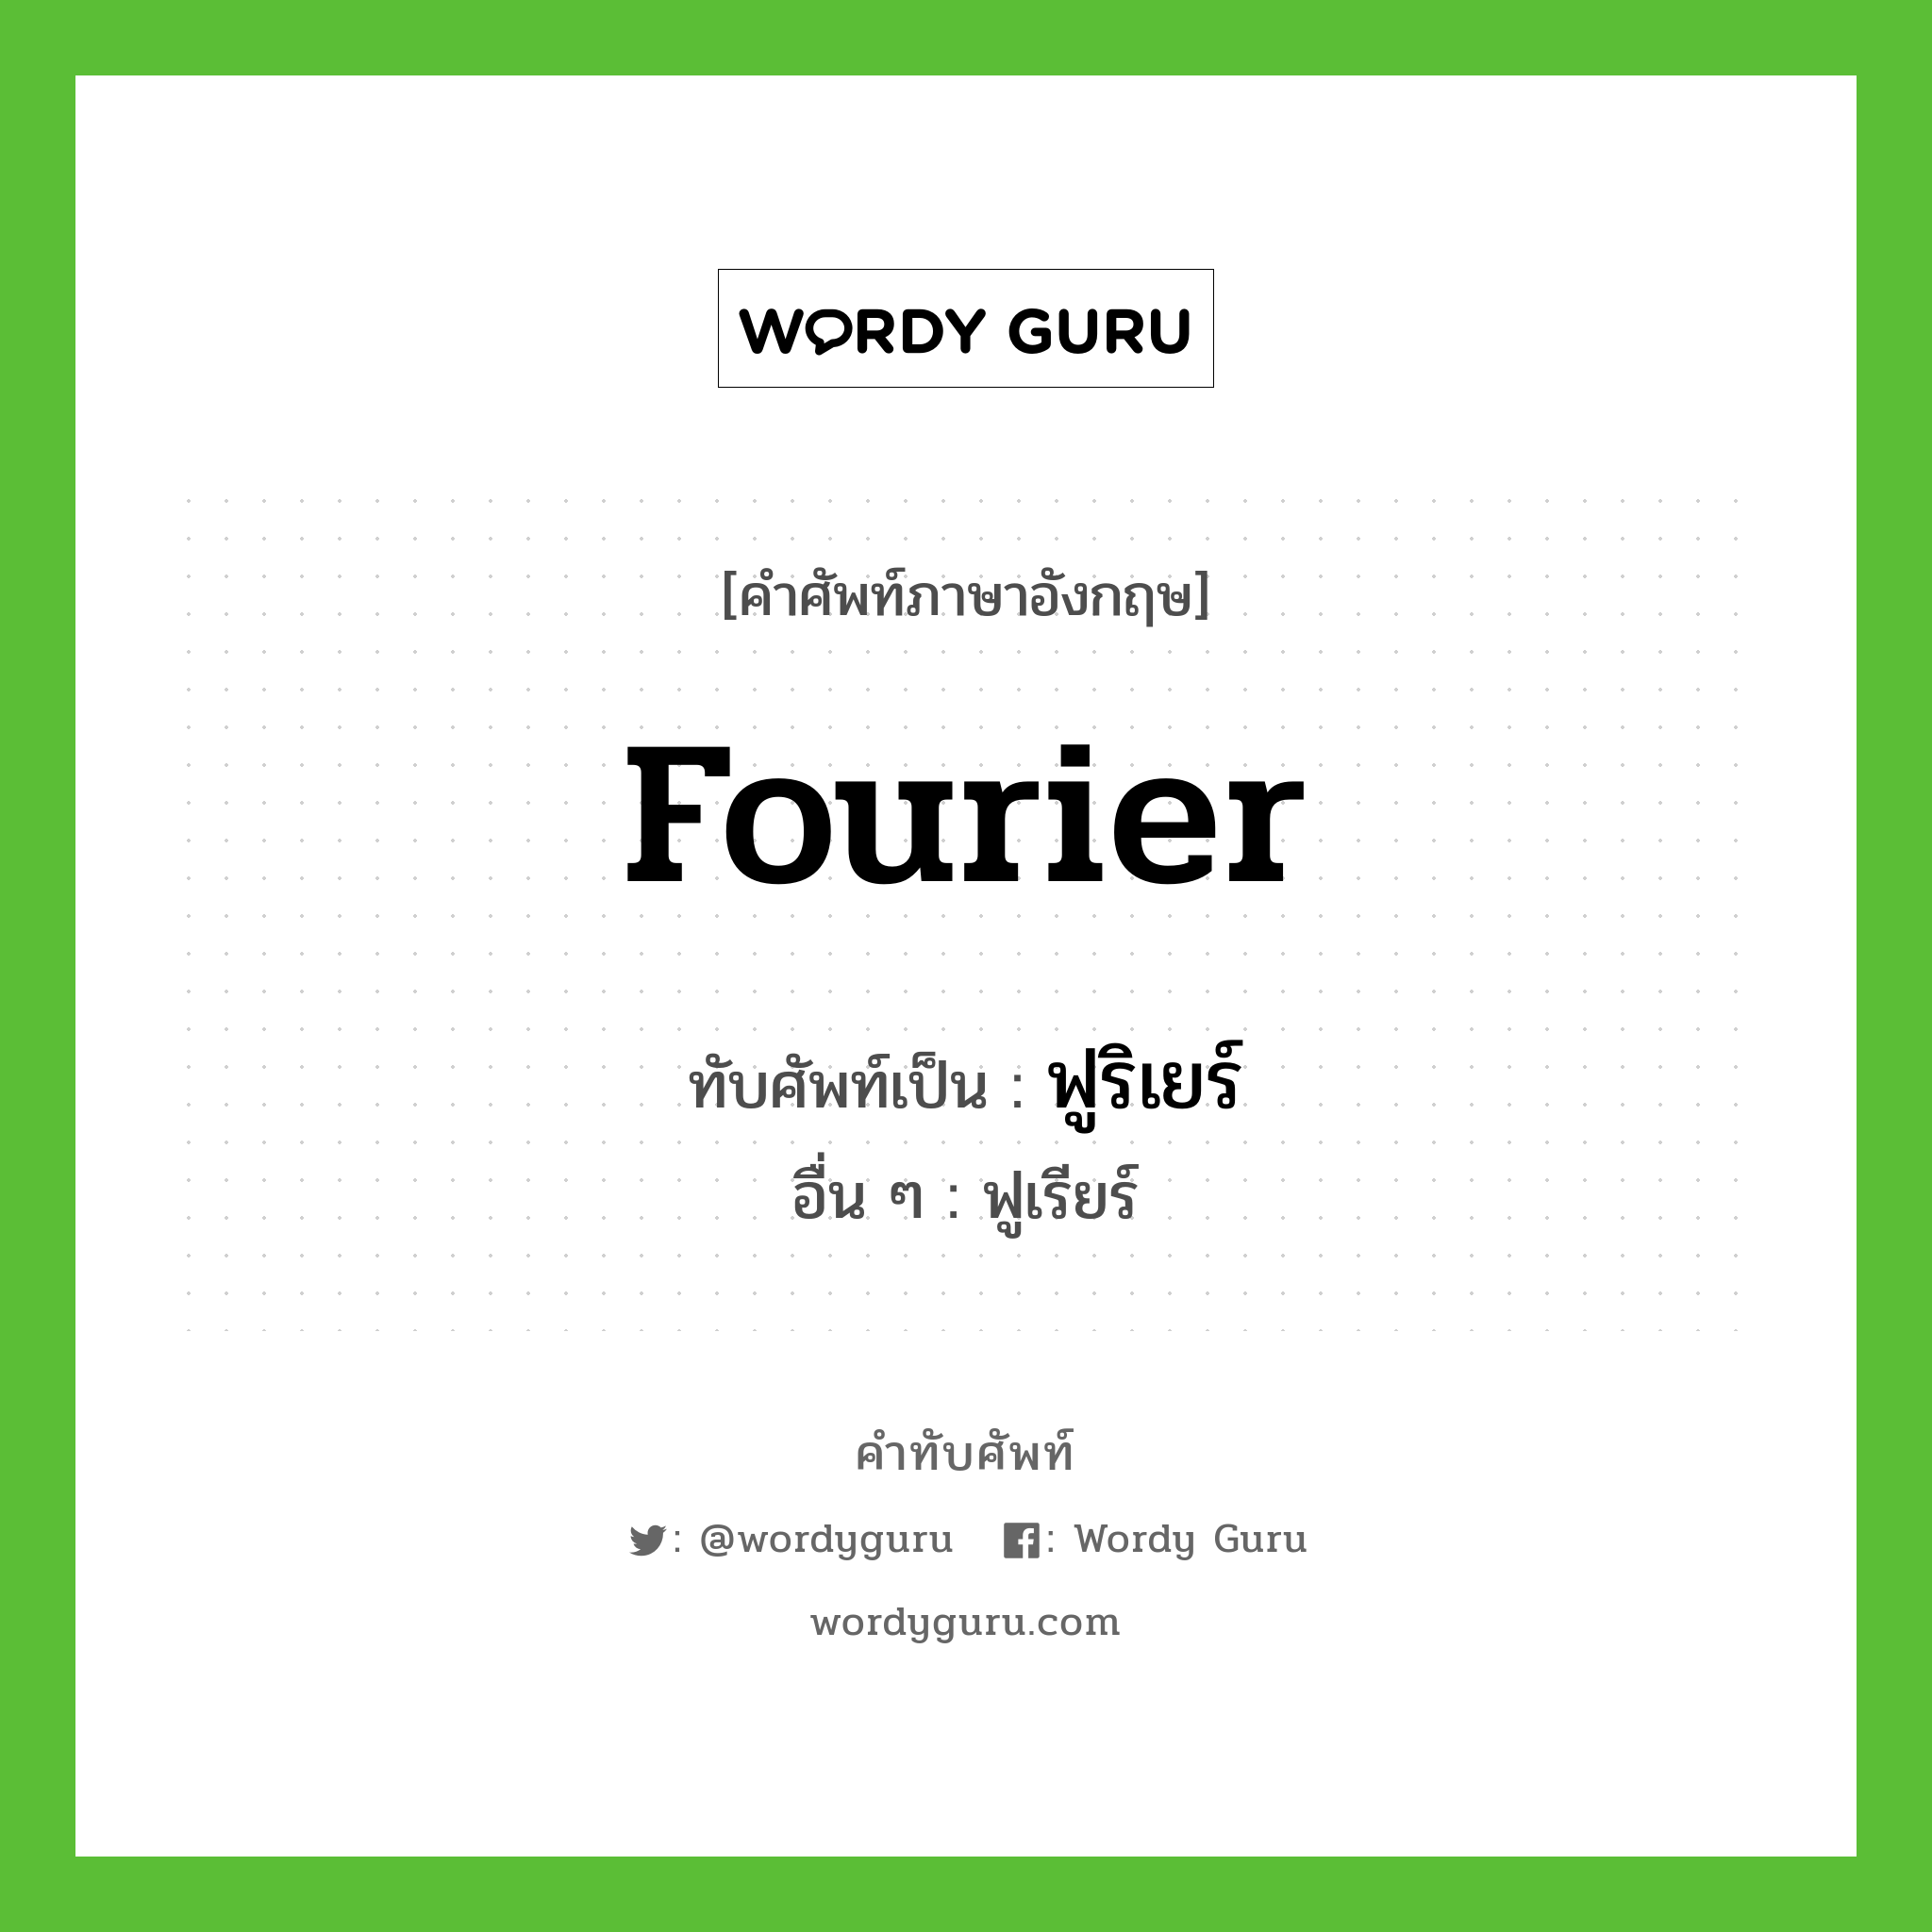 Fourier เขียนเป็นคำไทยว่าอะไร?, คำศัพท์ภาษาอังกฤษ Fourier ทับศัพท์เป็น ฟูริเยร์ อื่น ๆ ฟูเรียร์